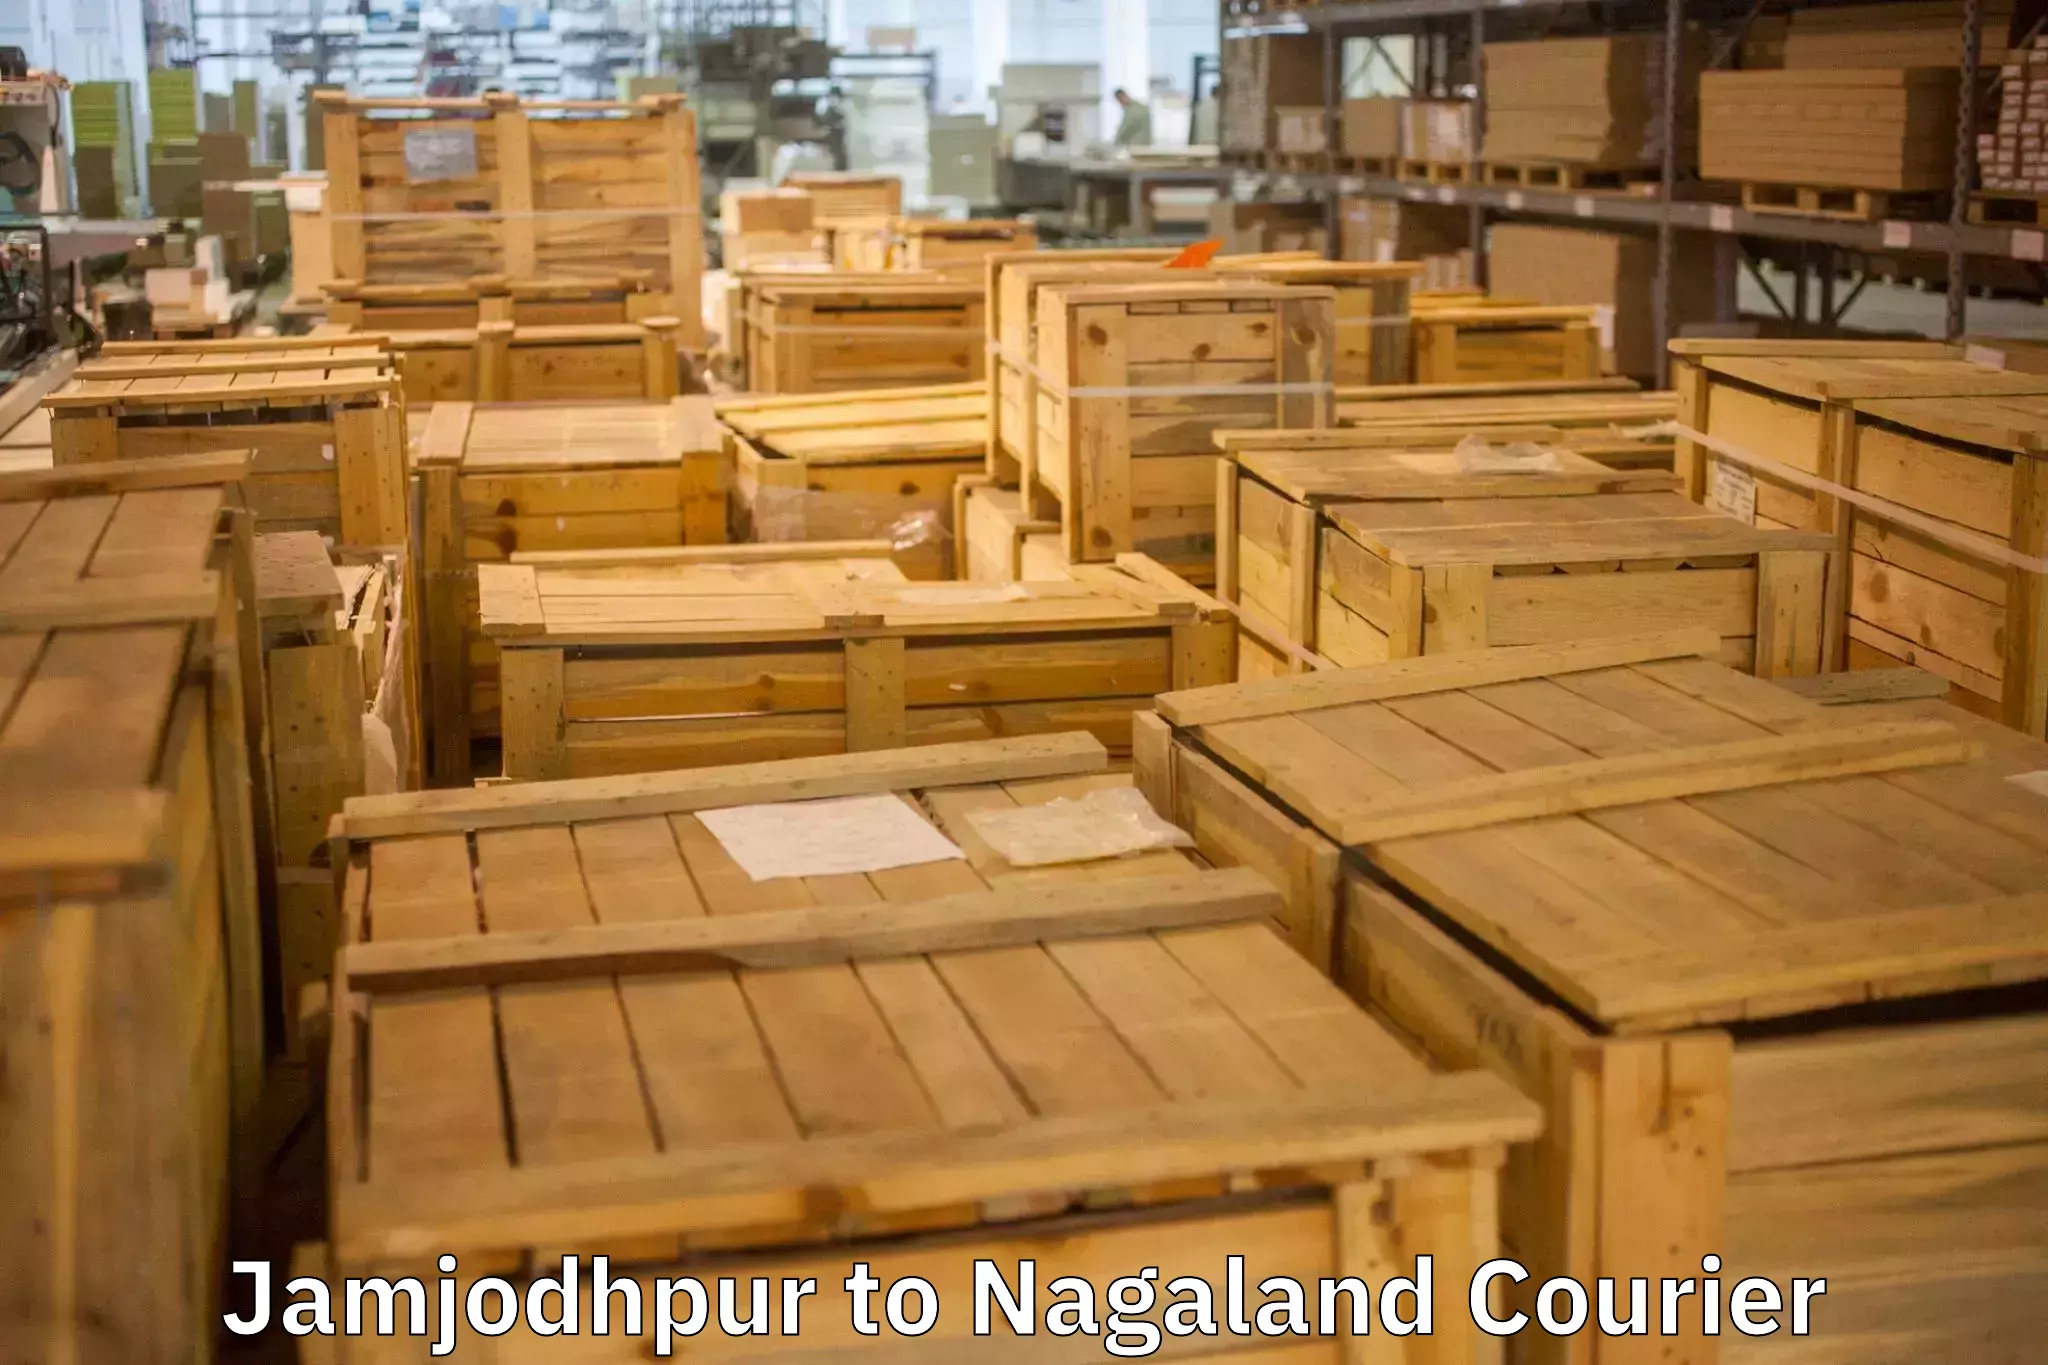 Expert furniture movers Jamjodhpur to Nagaland